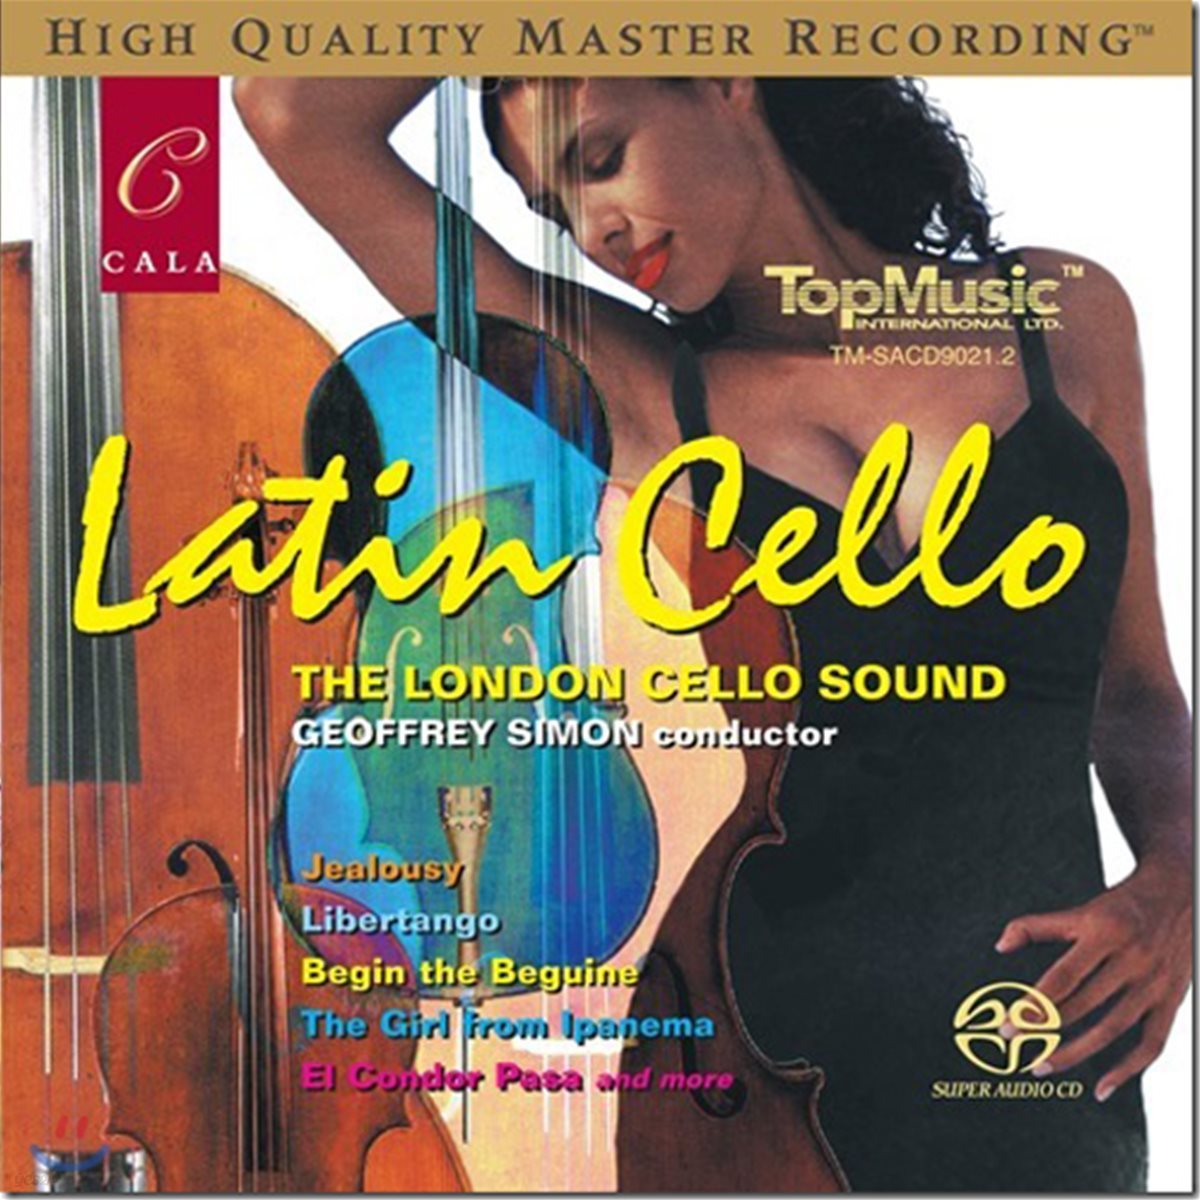 London Cello Sound 런던 첼로 사운드 - 라틴 첼로 (Latin Cello)